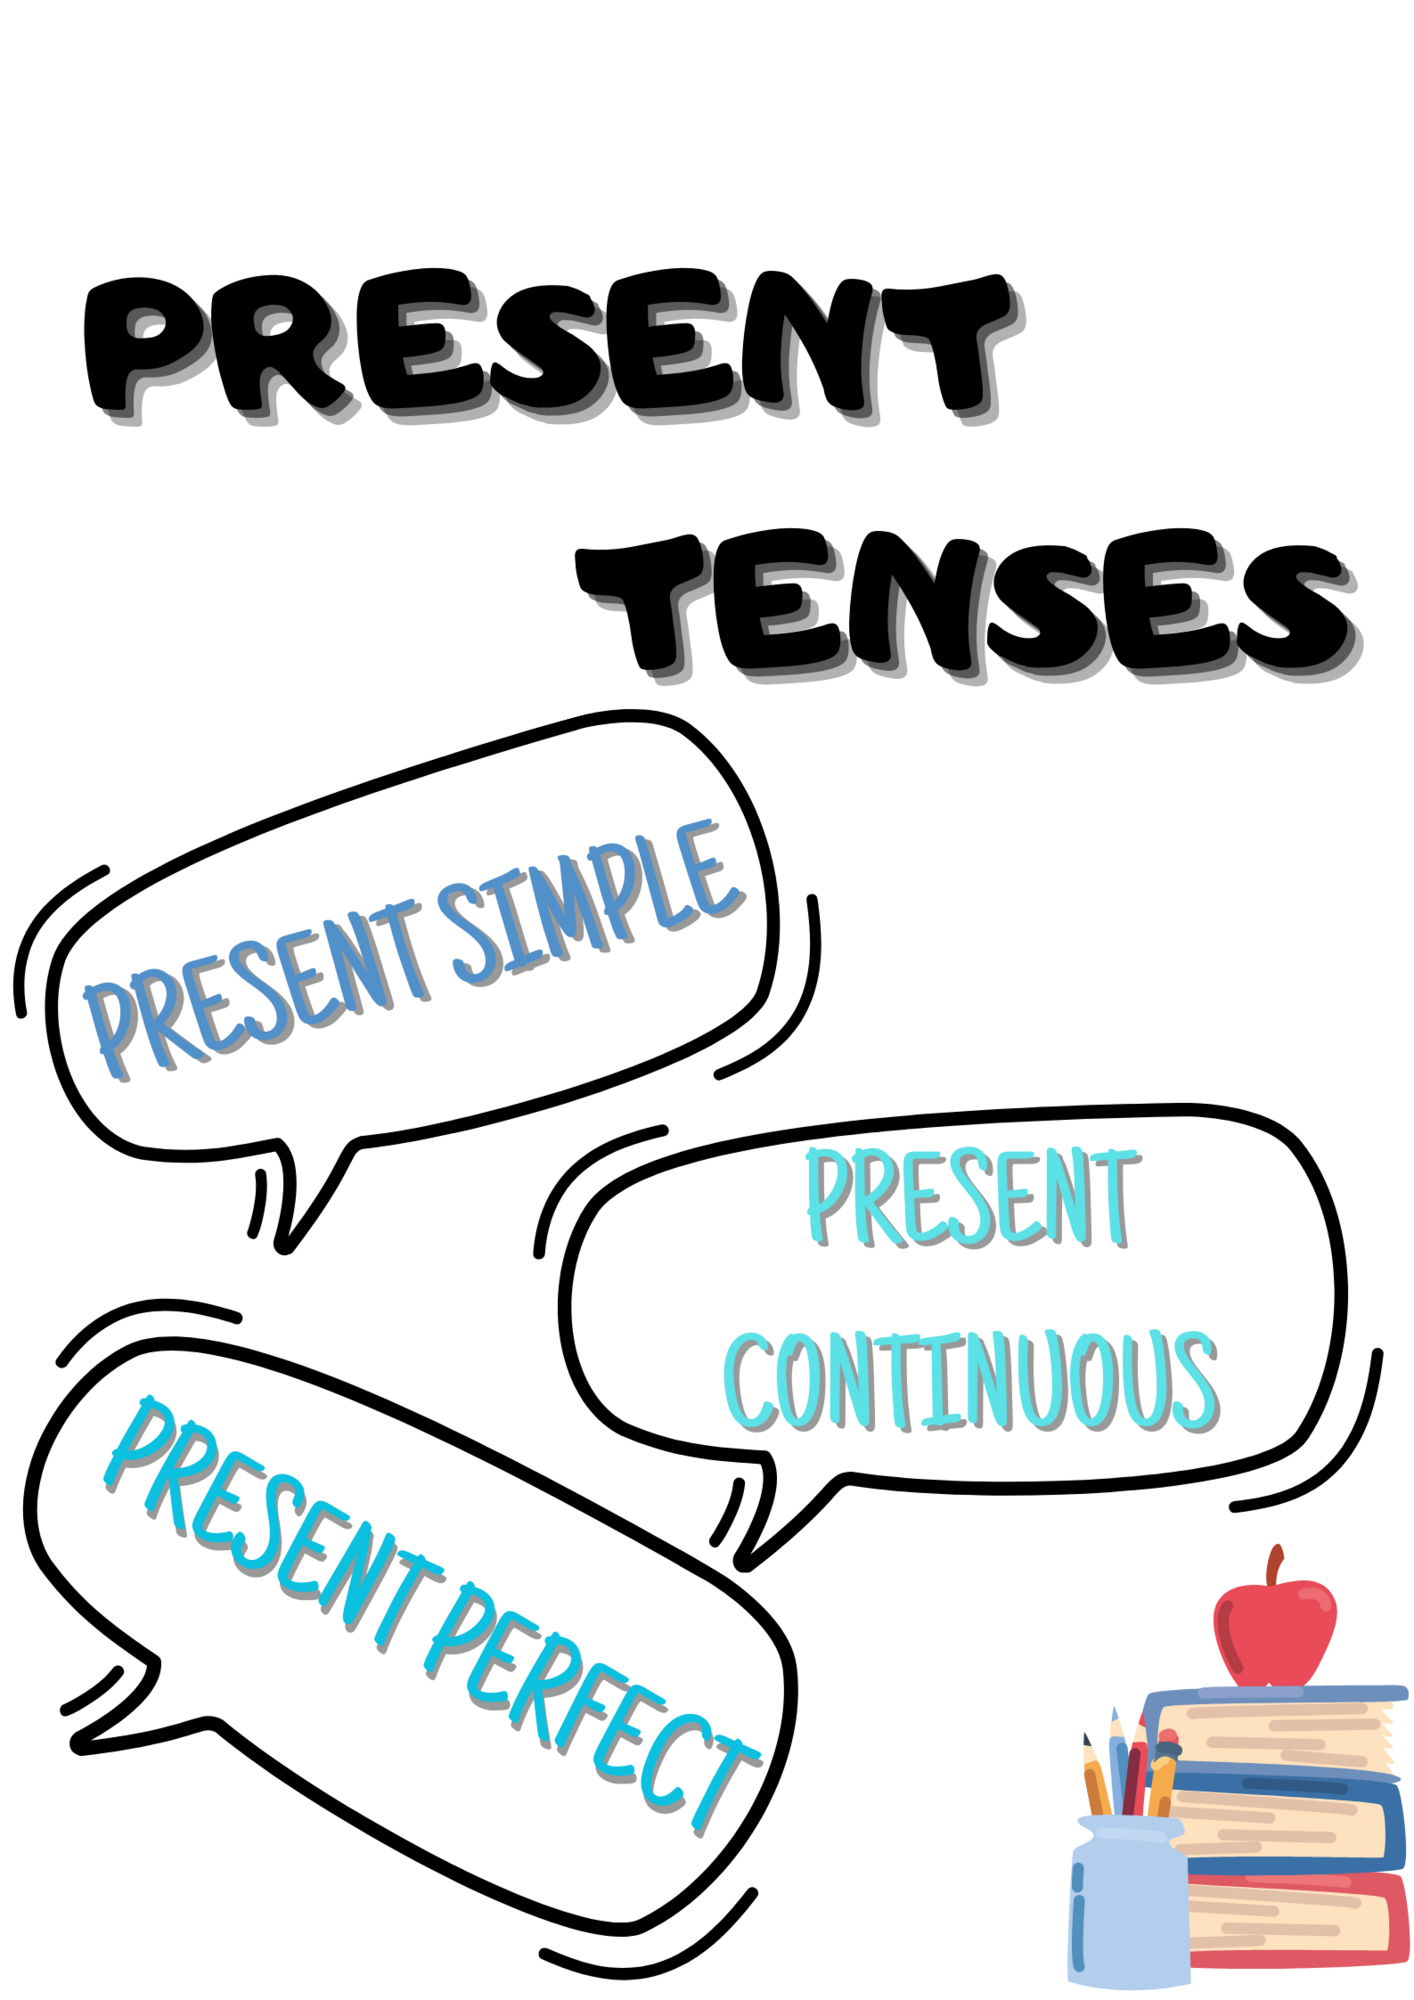 Present tenses - vysvetlenie gramatiky - Anglický jazyk ...